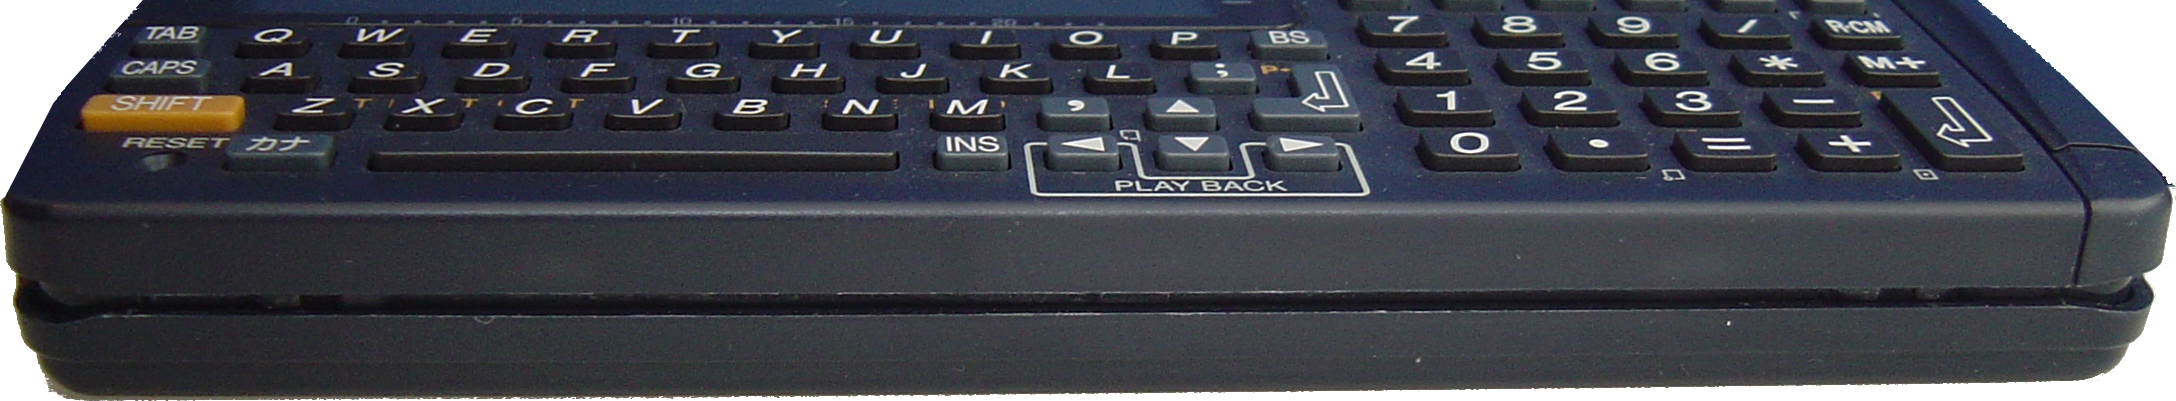 PC-G850V(ポケコン・ポケットコンピュータ)のことなら「自分でドット 